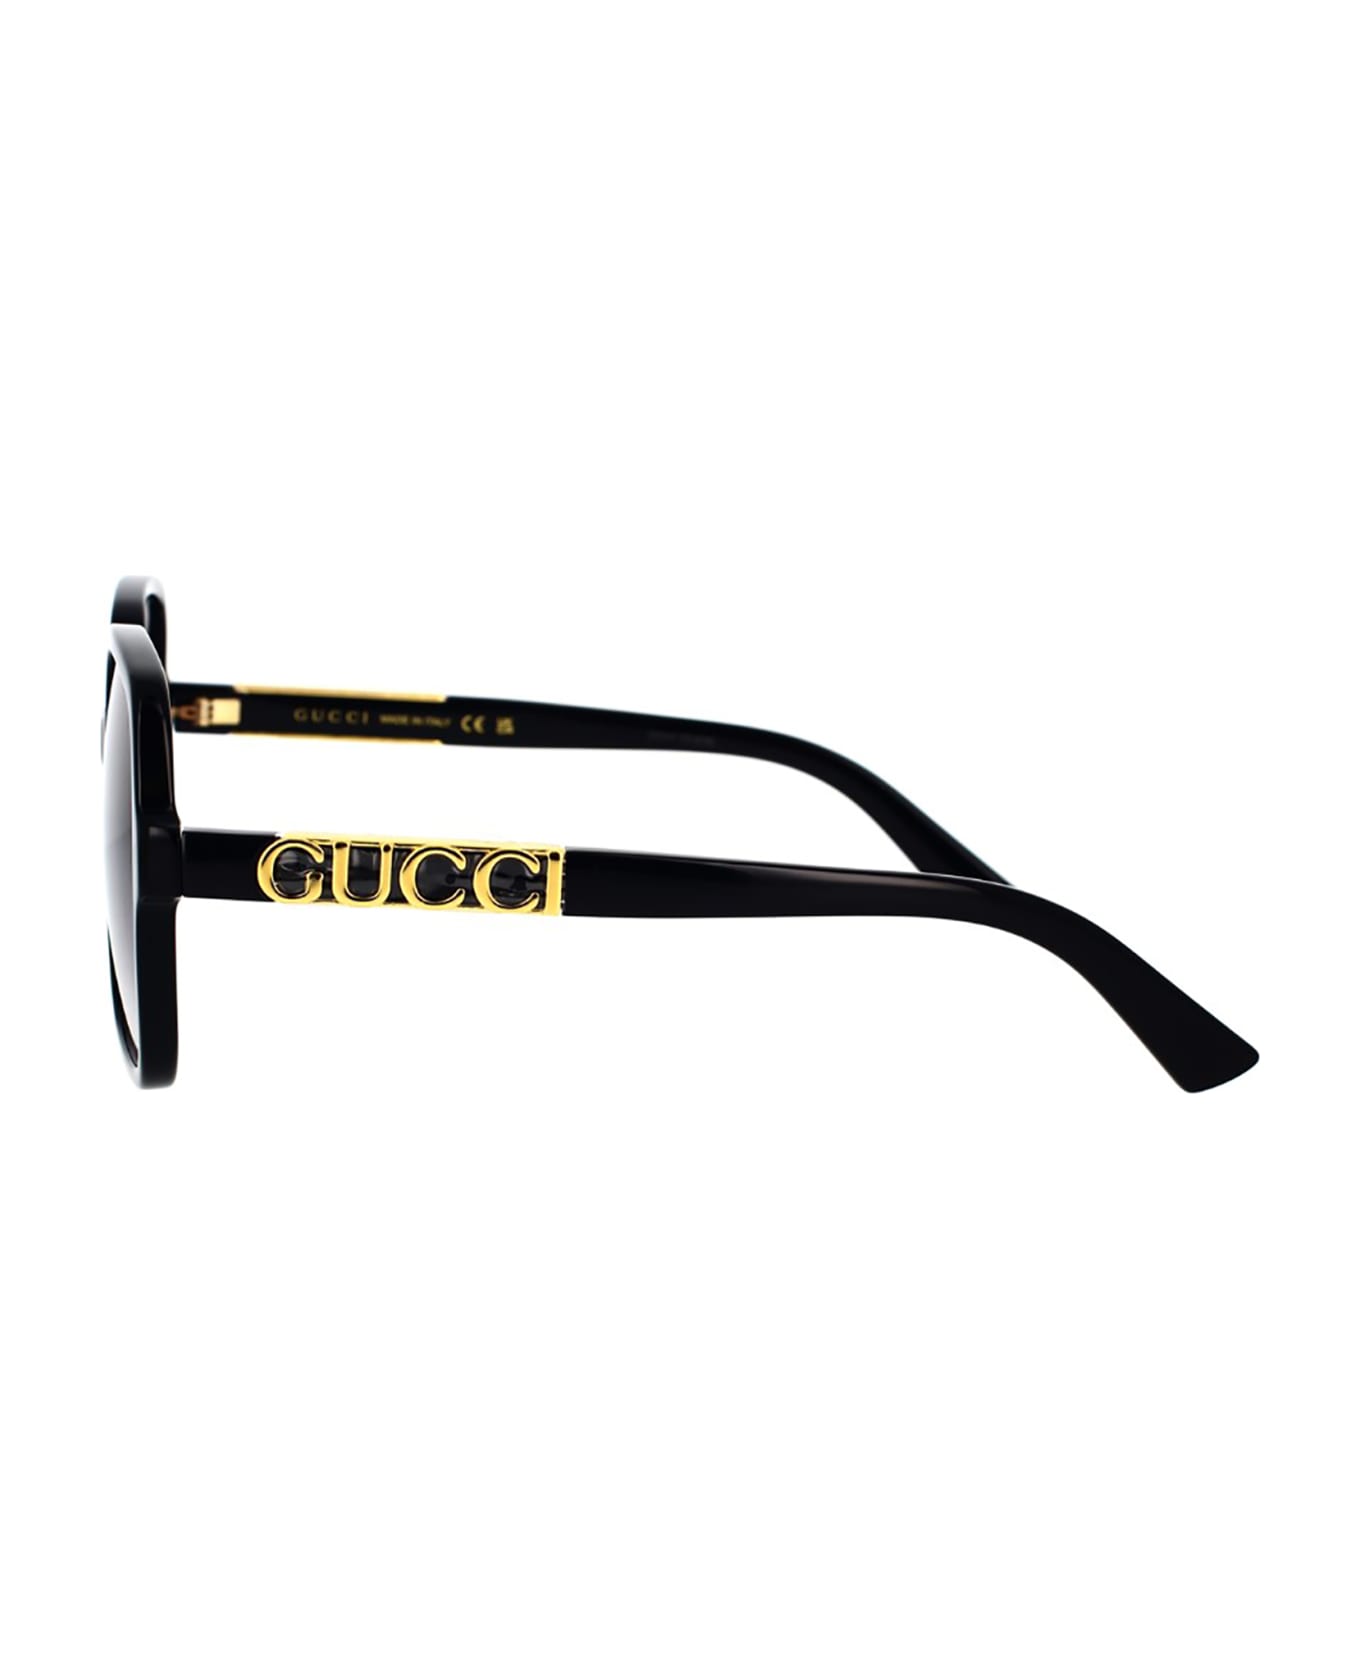 Gucci Eyewear 1e244ic0a - 002 black black grey